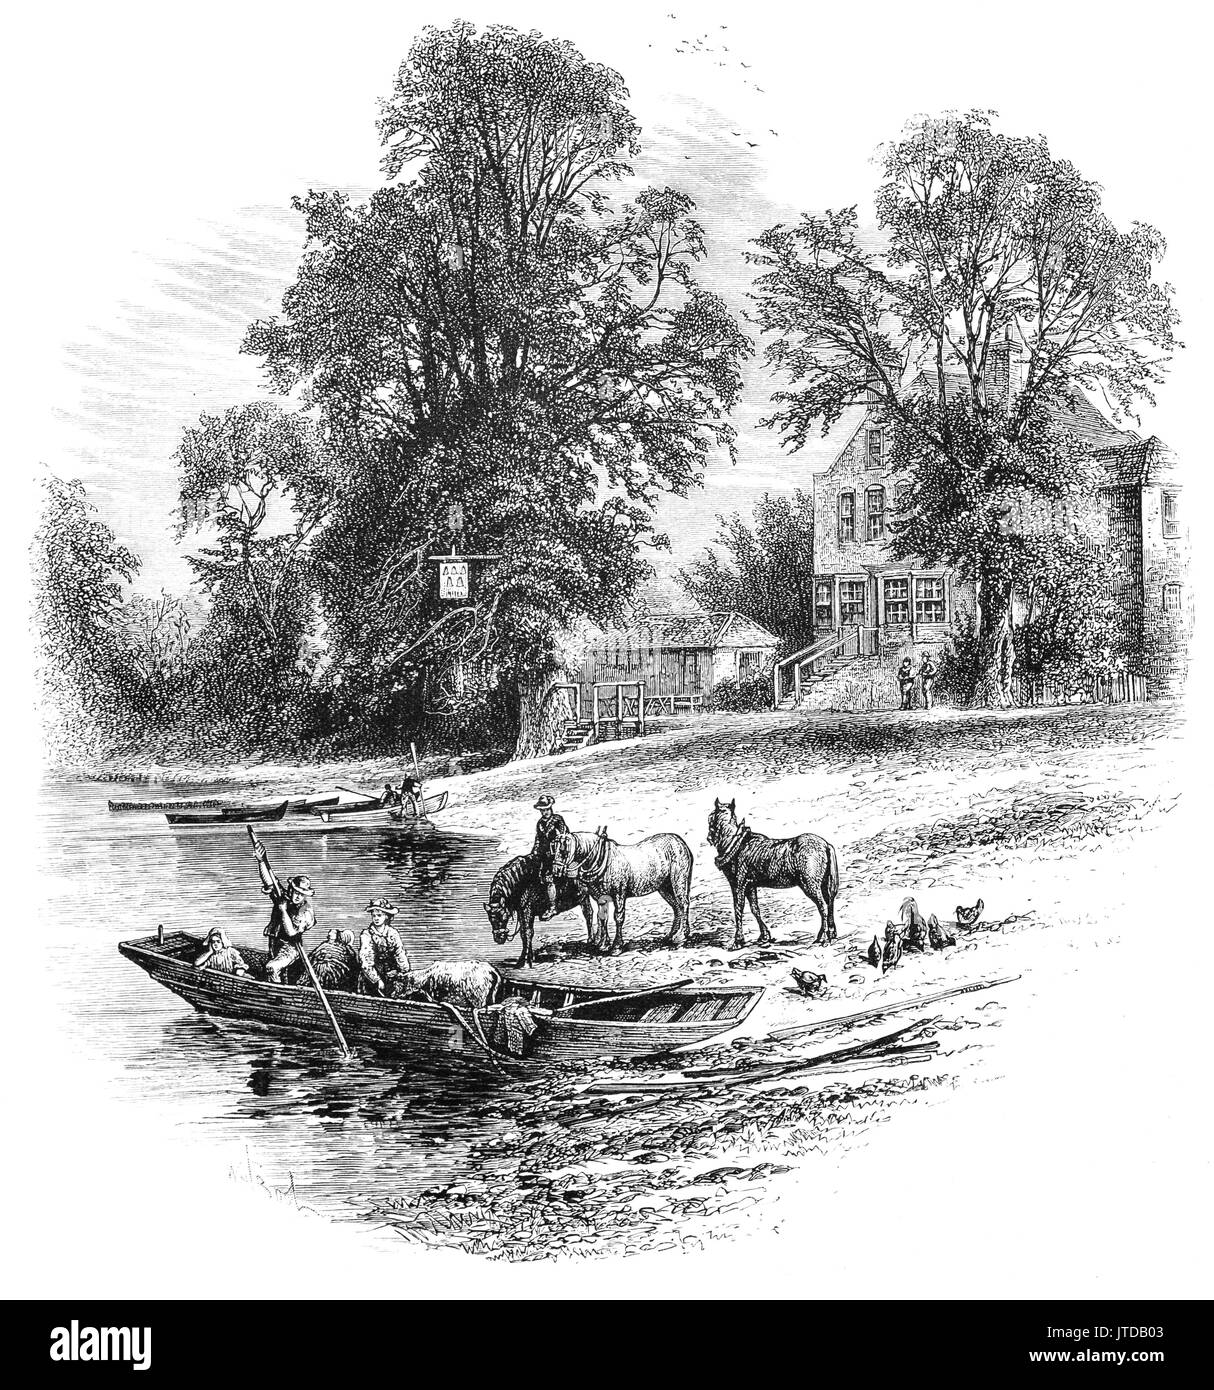 1870 : un petit ferry près des Bells d'Ouseley Pub sur la rivière la Tamise à Old Windsor, Berkshire, Angleterre. Le pub 'Bells of Ouseley' est censé commémorer les cloches de l'abbaye d'Osney qui ont été amenées en aval à la dissolution et ont disparu dans la boue à ce stade. Banque D'Images